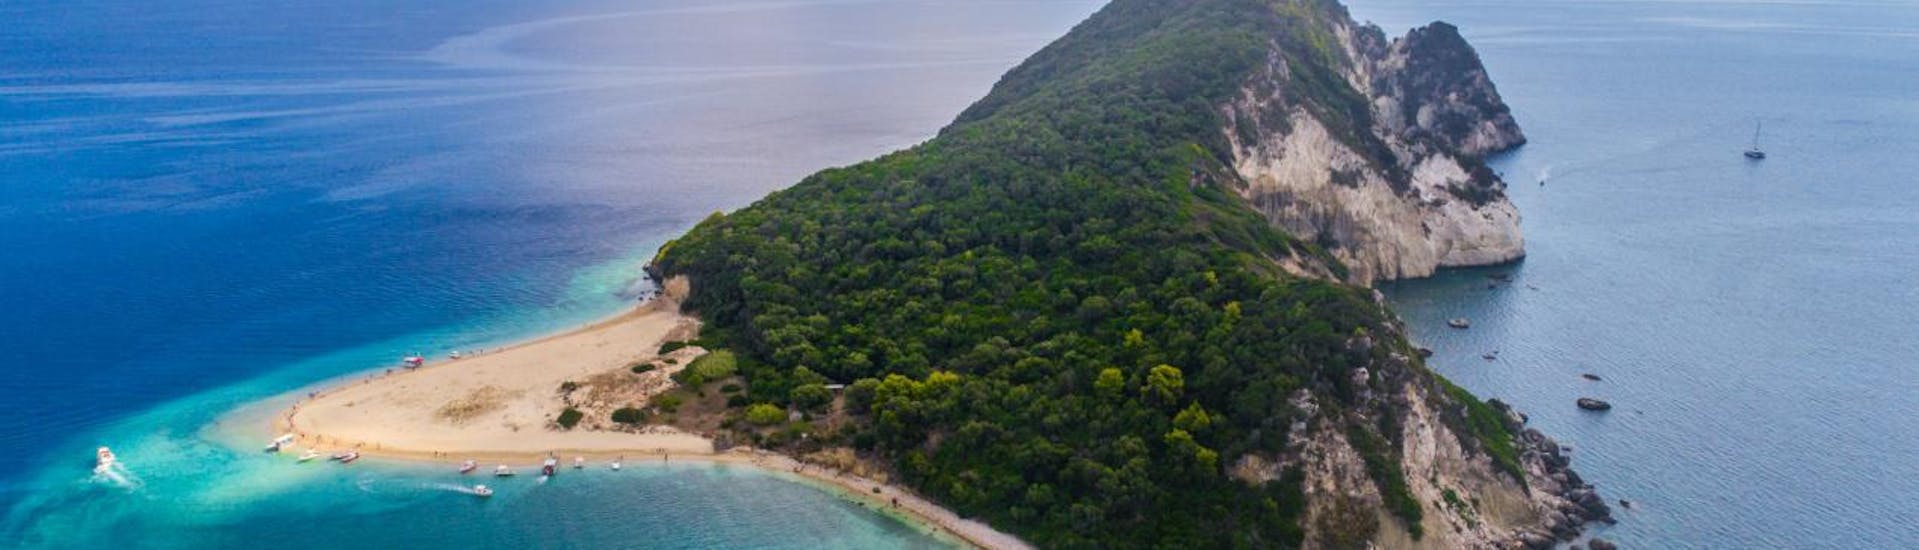 Foto der Schildkröteninsel und dem blauen Meer, die beim Bootsverleih in Agios Sostis - Elite mit Traventure Zakynthos besucht werden können.